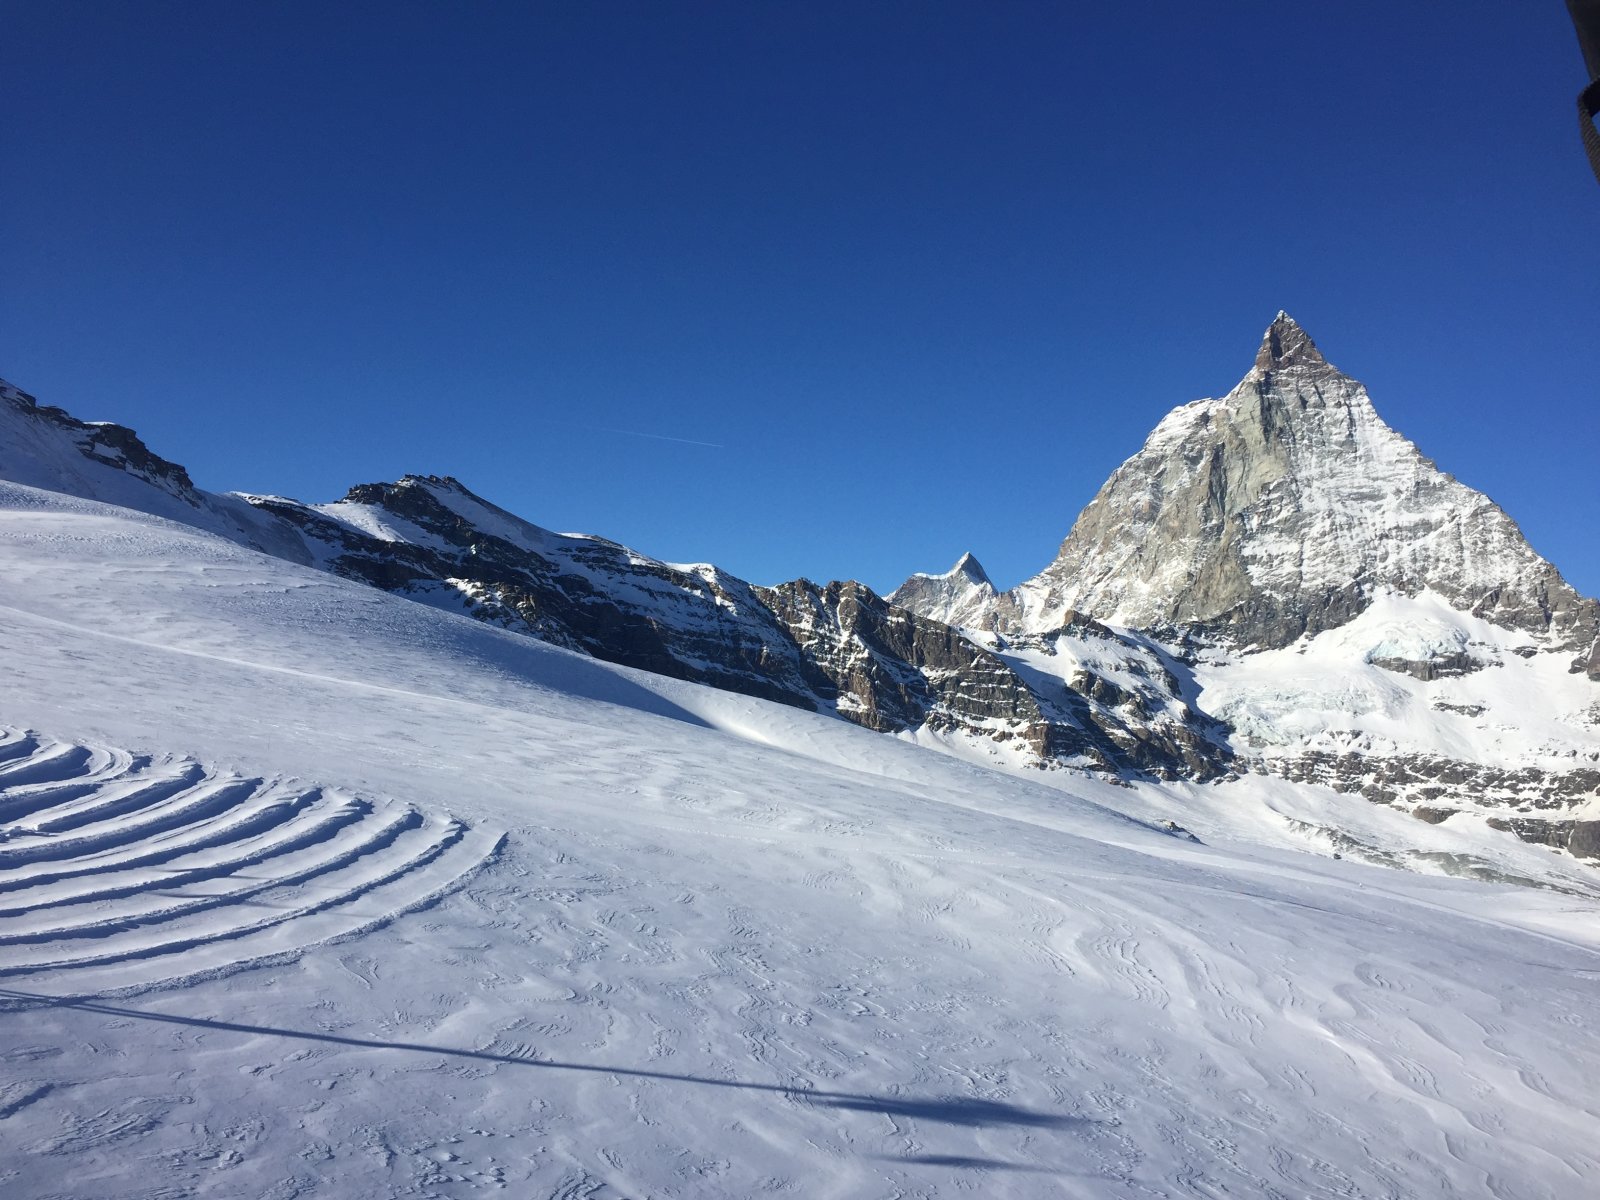 Háttérben a Matterhorn